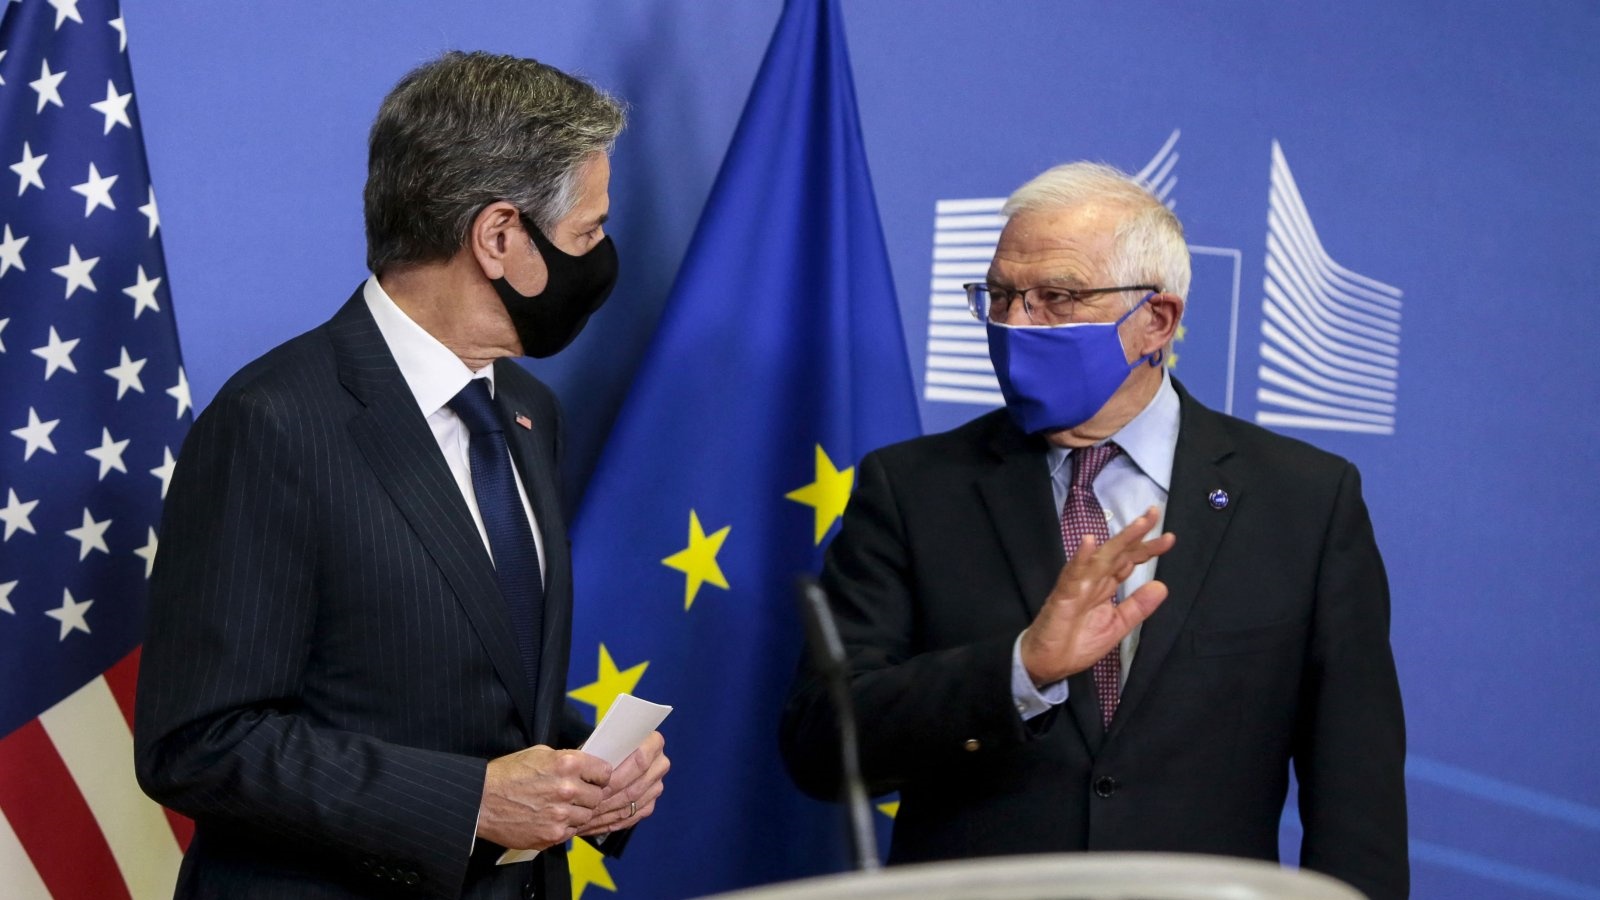 وزير الخارجية الأميركي أنتوني بلينكين (إلى اليسار) والممثل الأعلى للإتحاد الأوروبي للشؤون الخارجية جوزيب بوريل يعقدان مؤتمرًا صحفيًا قبل اجتماعهما في مقر الاتحاد الأوروبي في بروكسل، بلجيكا. في 24 آذار/مارس 2021.